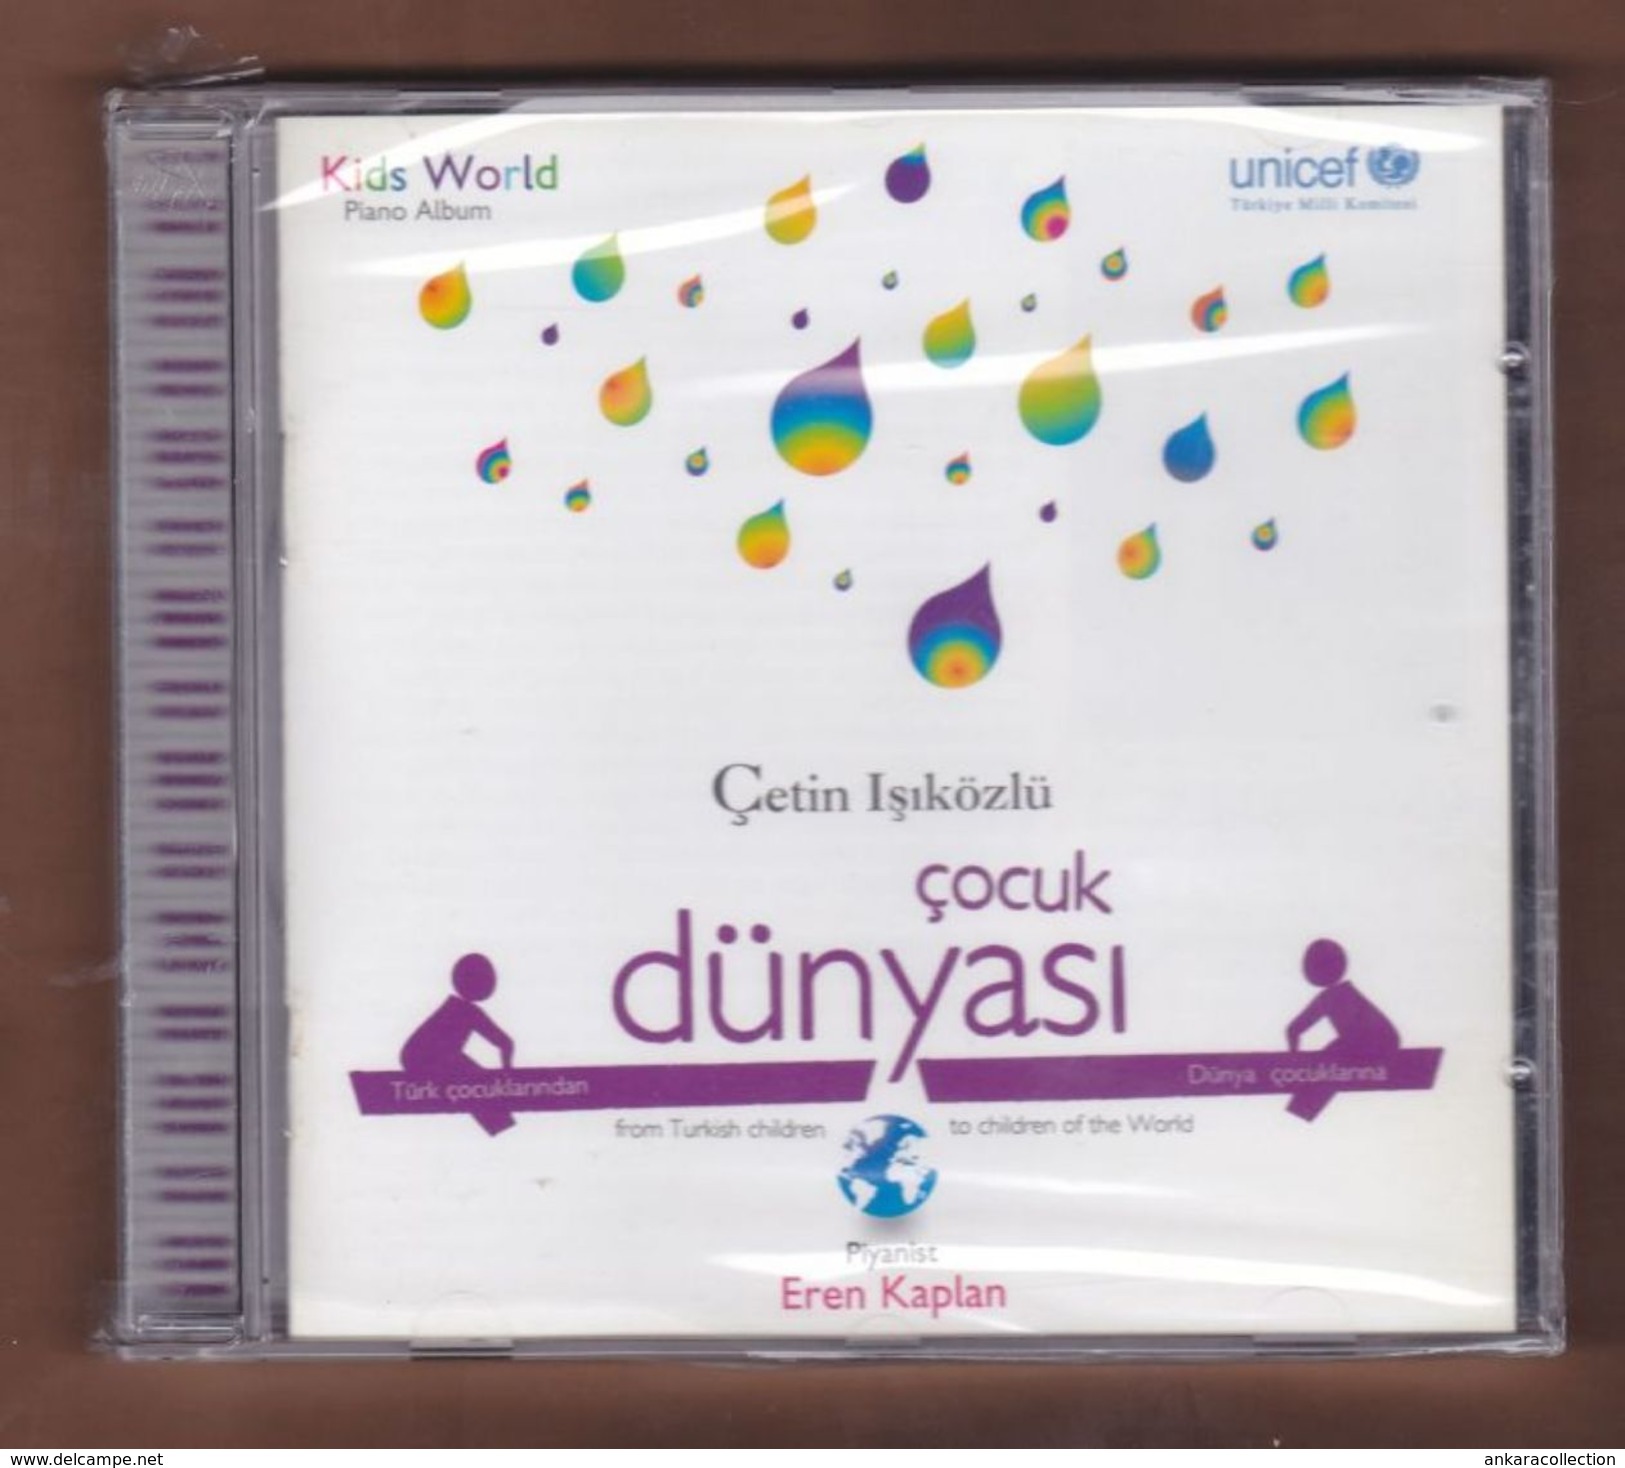 AC -  CETIN ISIKOZLU COCUK DUNYASI FROM TURKISH CHILDREN TO CHILDREN OF THE WORLD BRAND NEW TURKISH MUSIC CD - World Music